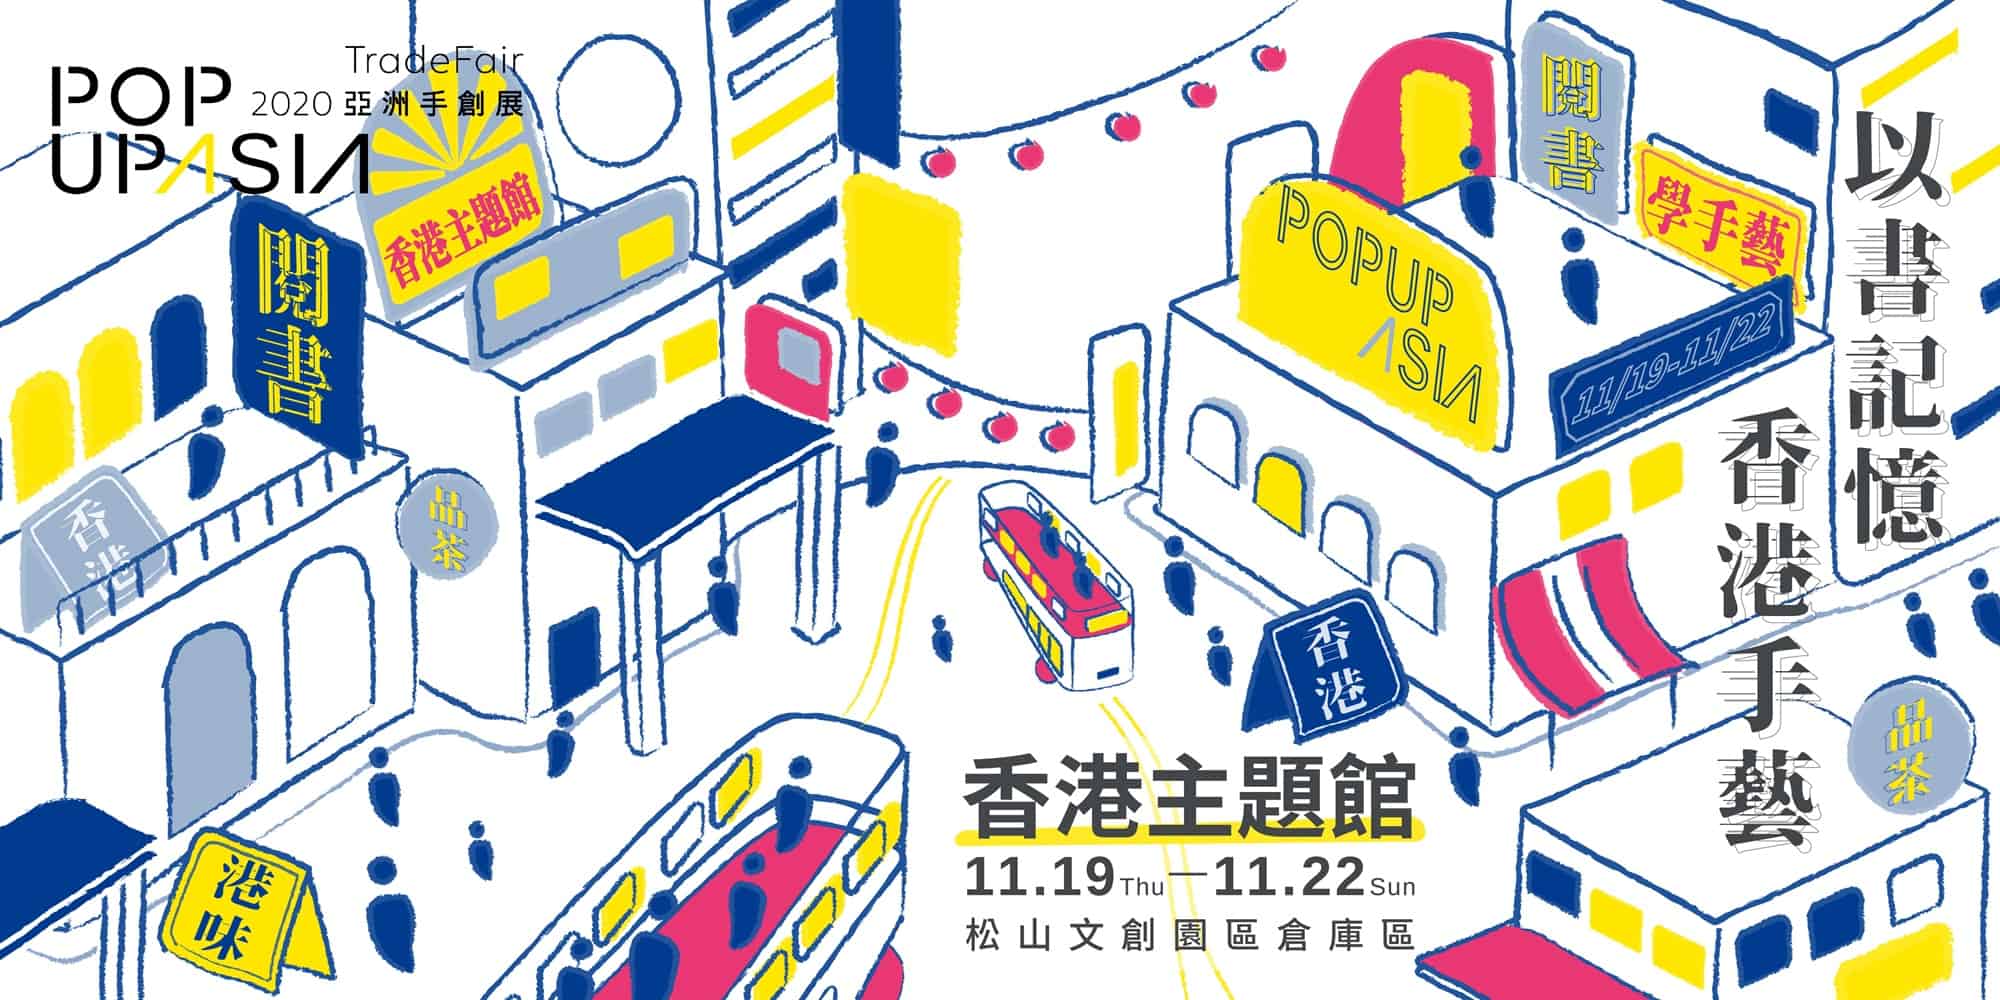 香港主題館在2020-Pop-Up-Asia-亞洲手創展